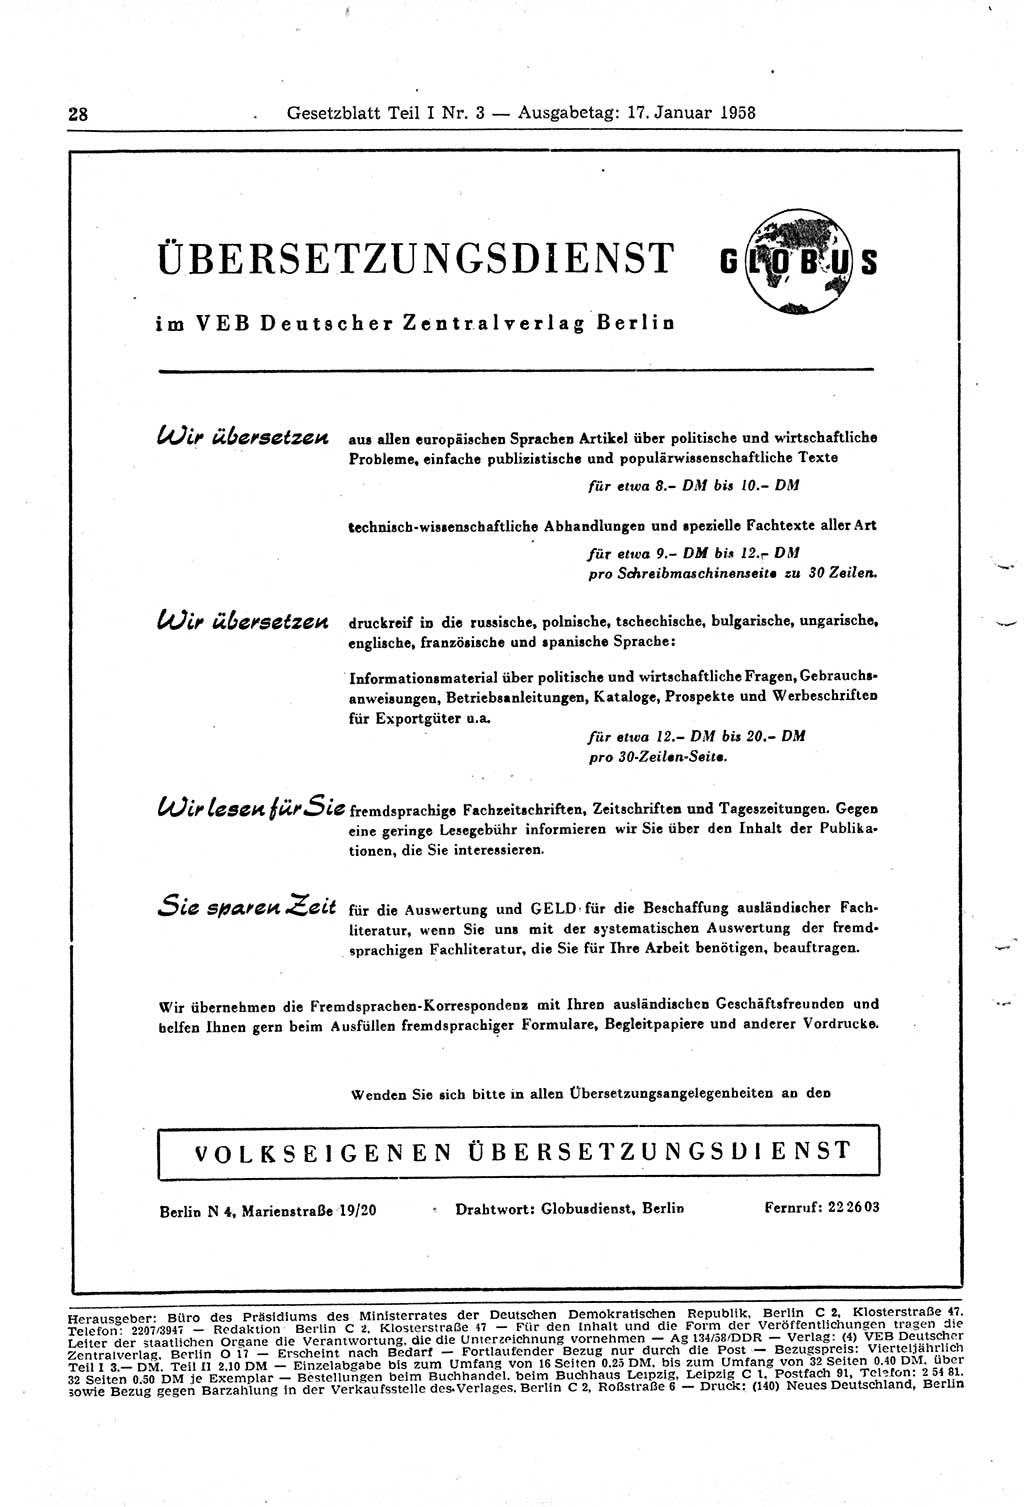 Gesetzblatt (GBl.) der Deutschen Demokratischen Republik (DDR) Teil Ⅰ 1958, Seite 28 (GBl. DDR Ⅰ 1958, S. 28)